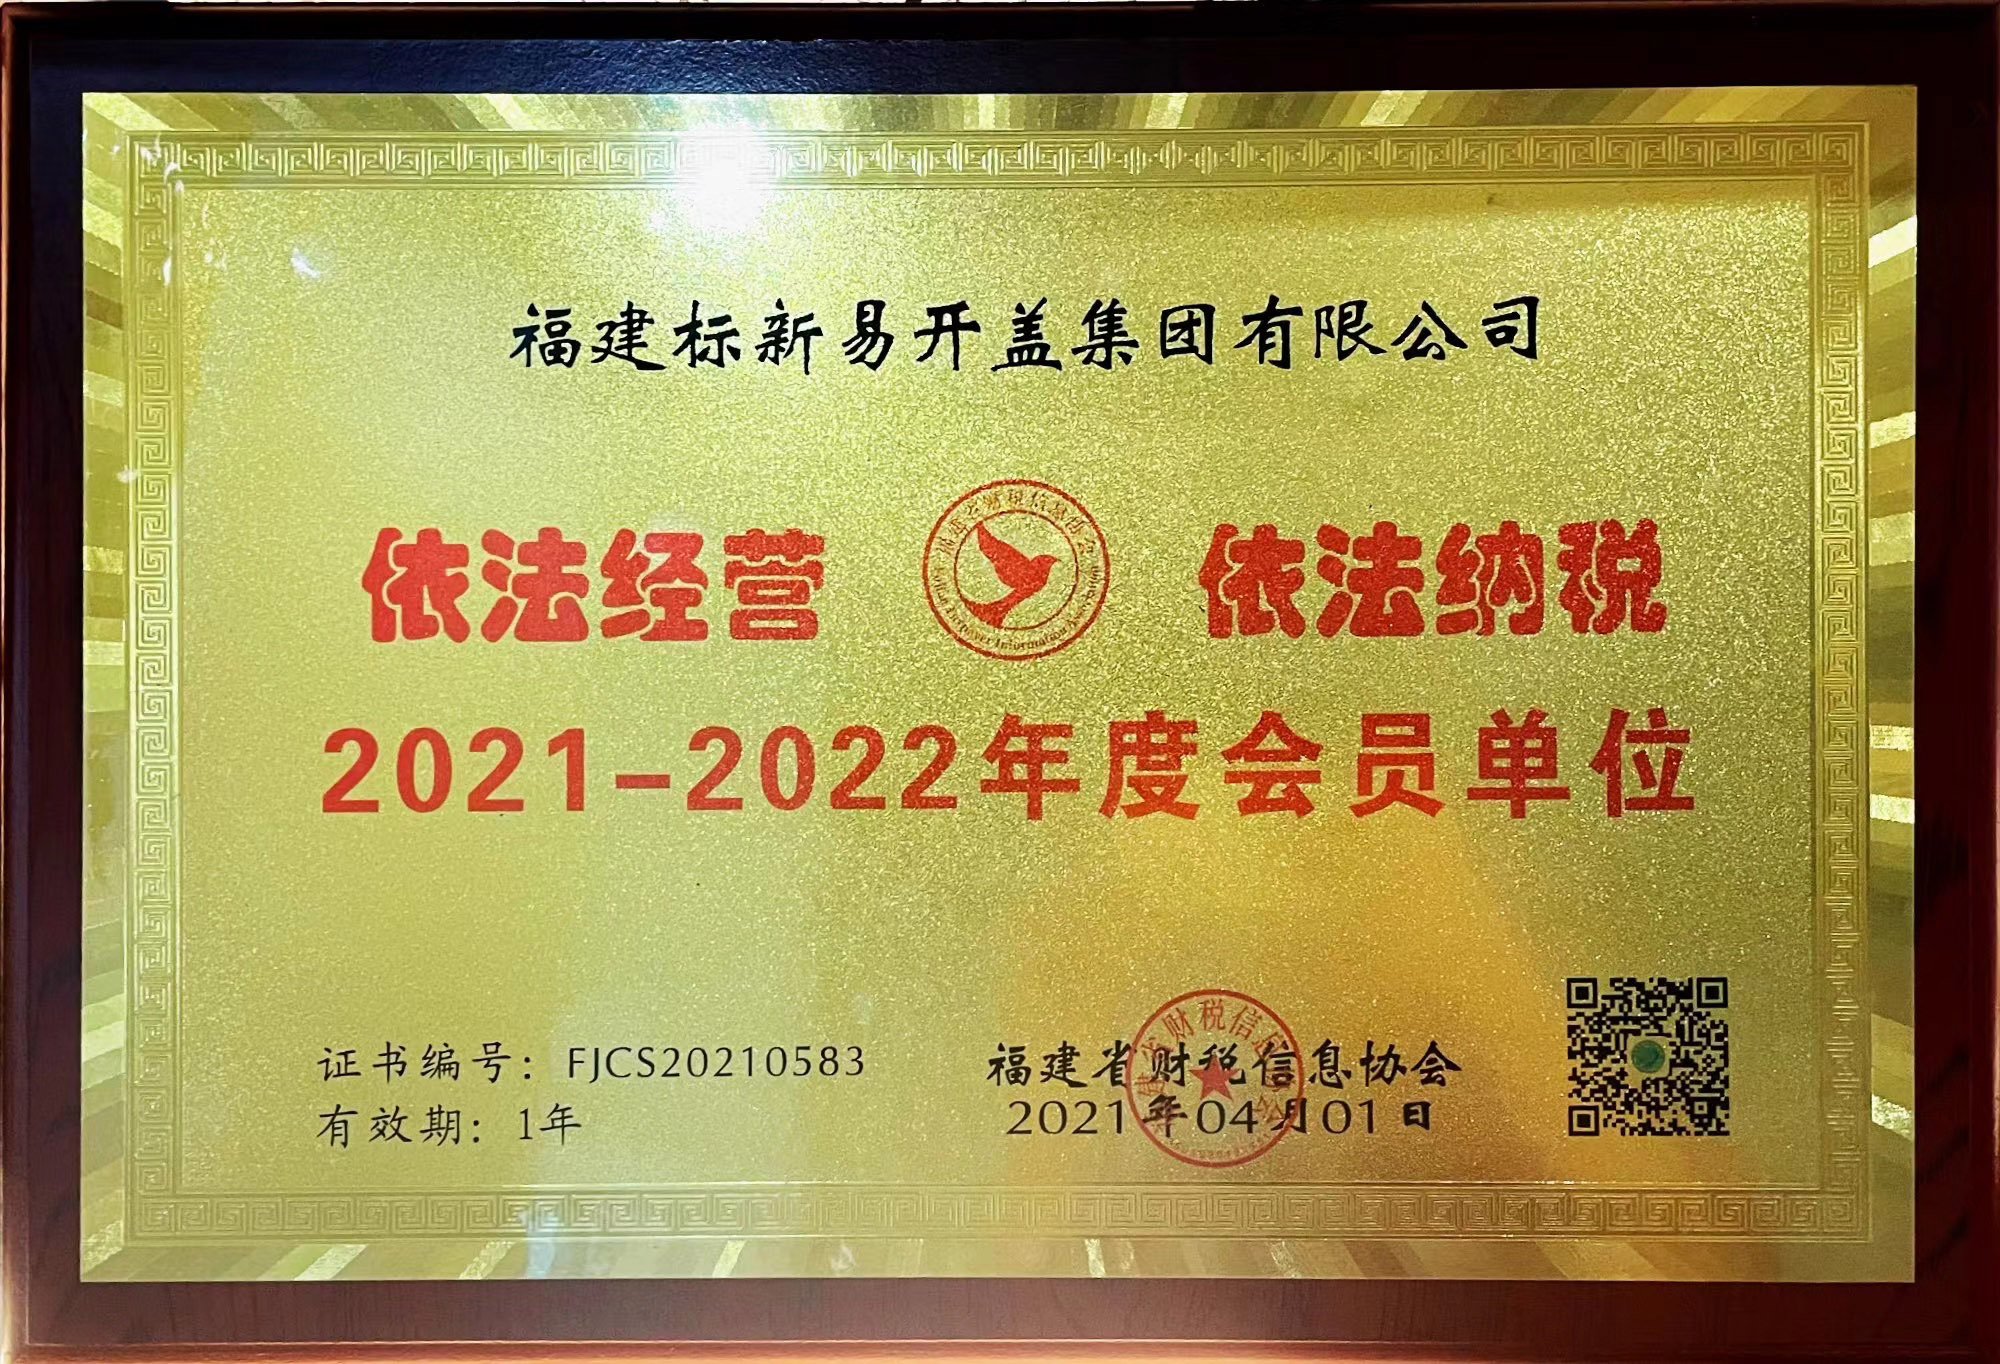 2021-2022年度會員單位